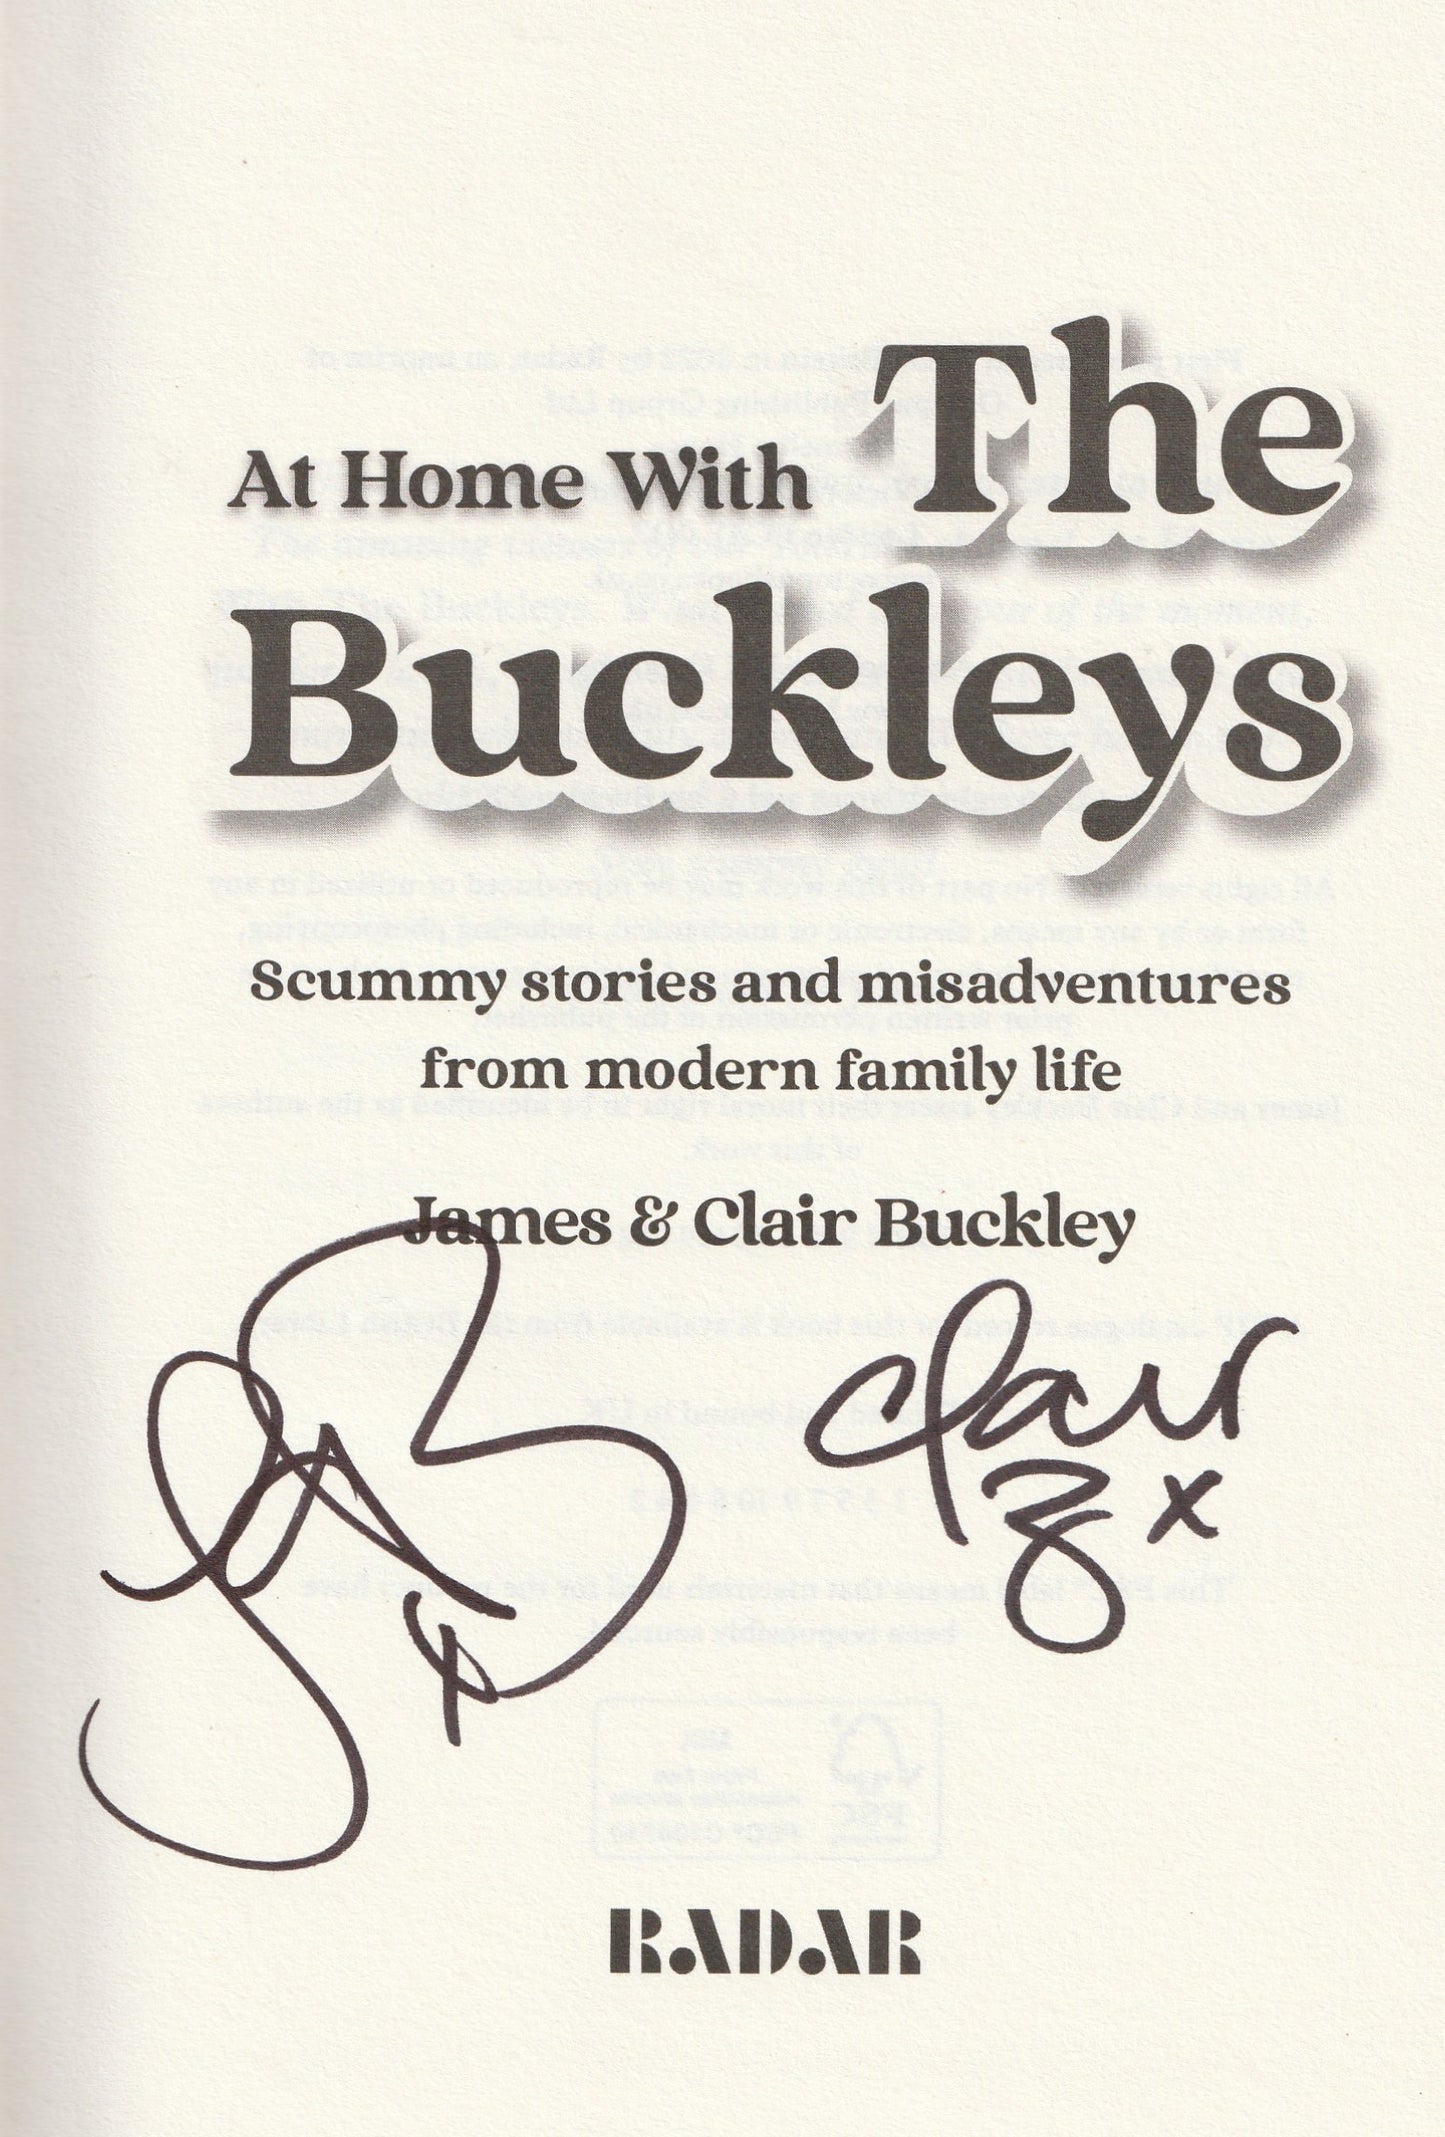 James &Clair Buckley